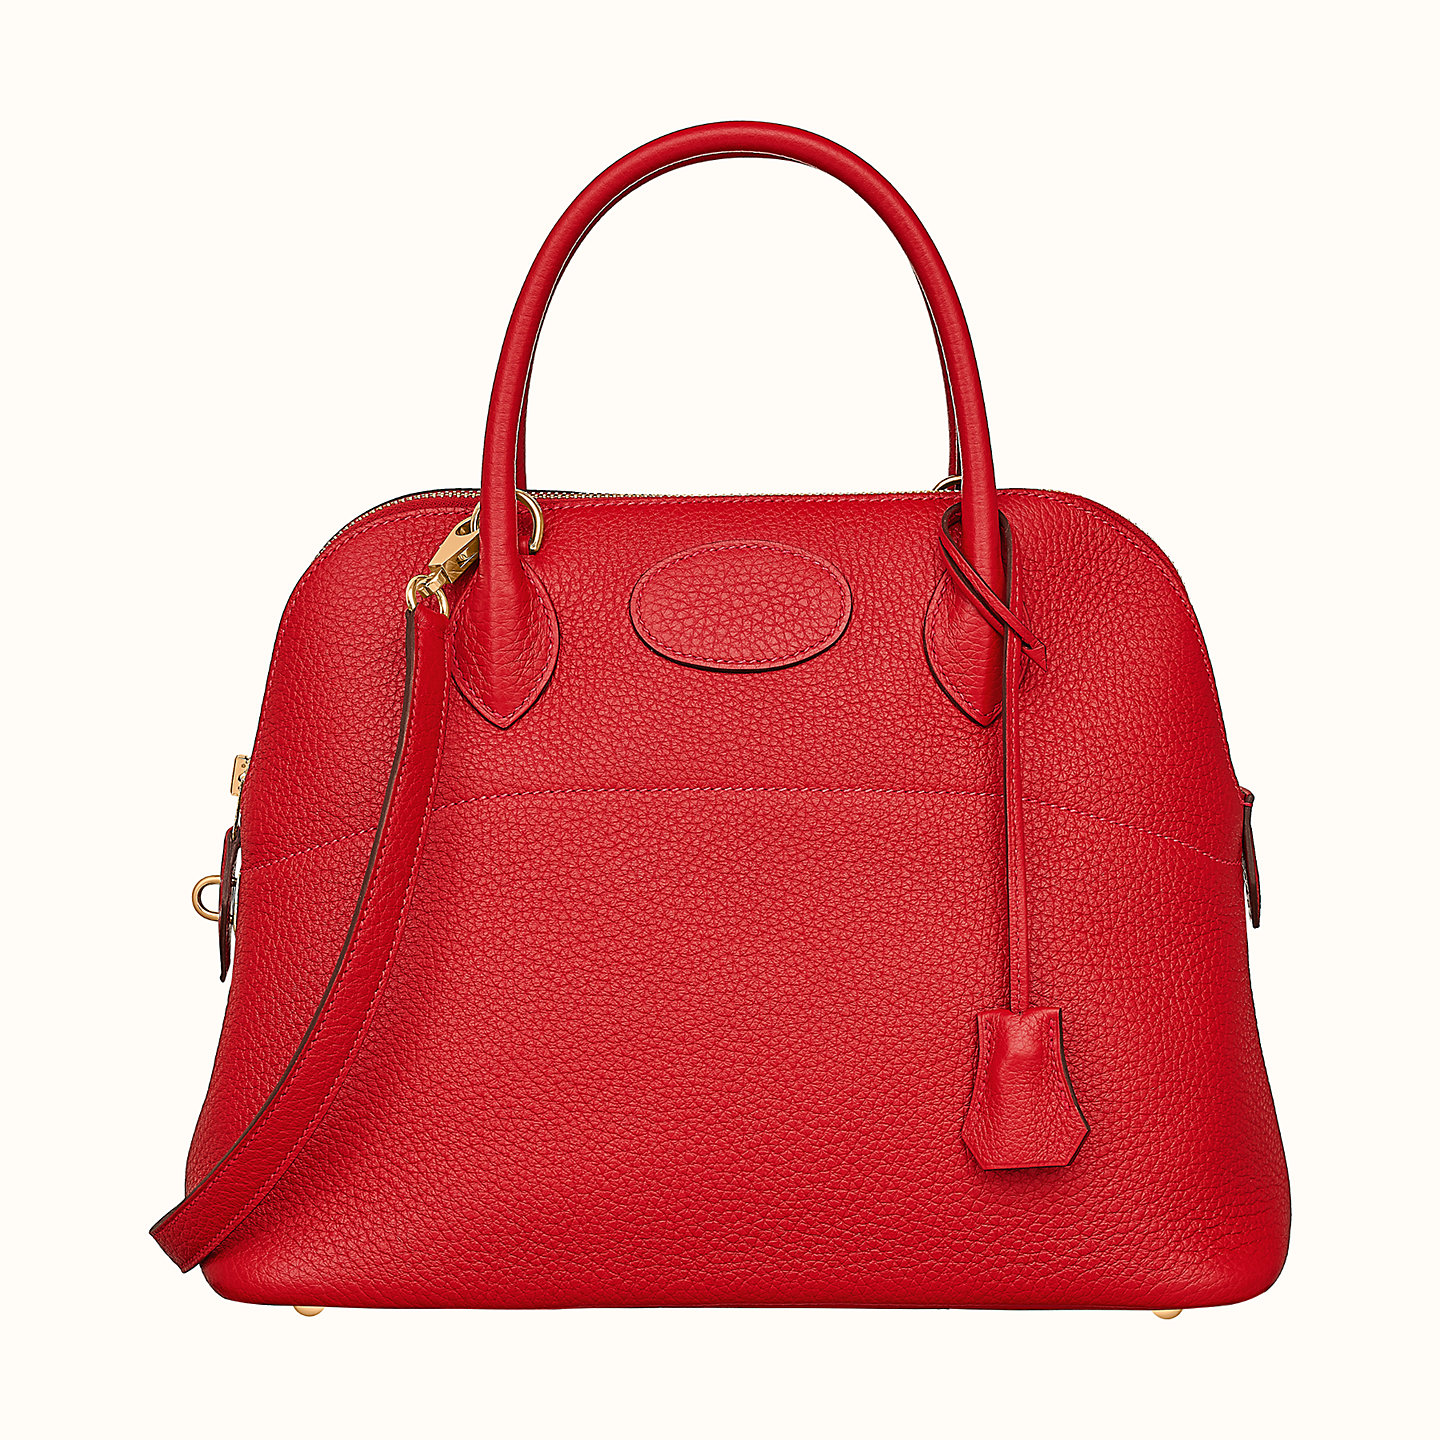 Would you pay $8,400.00 for this handbag? | IMDB v2.2